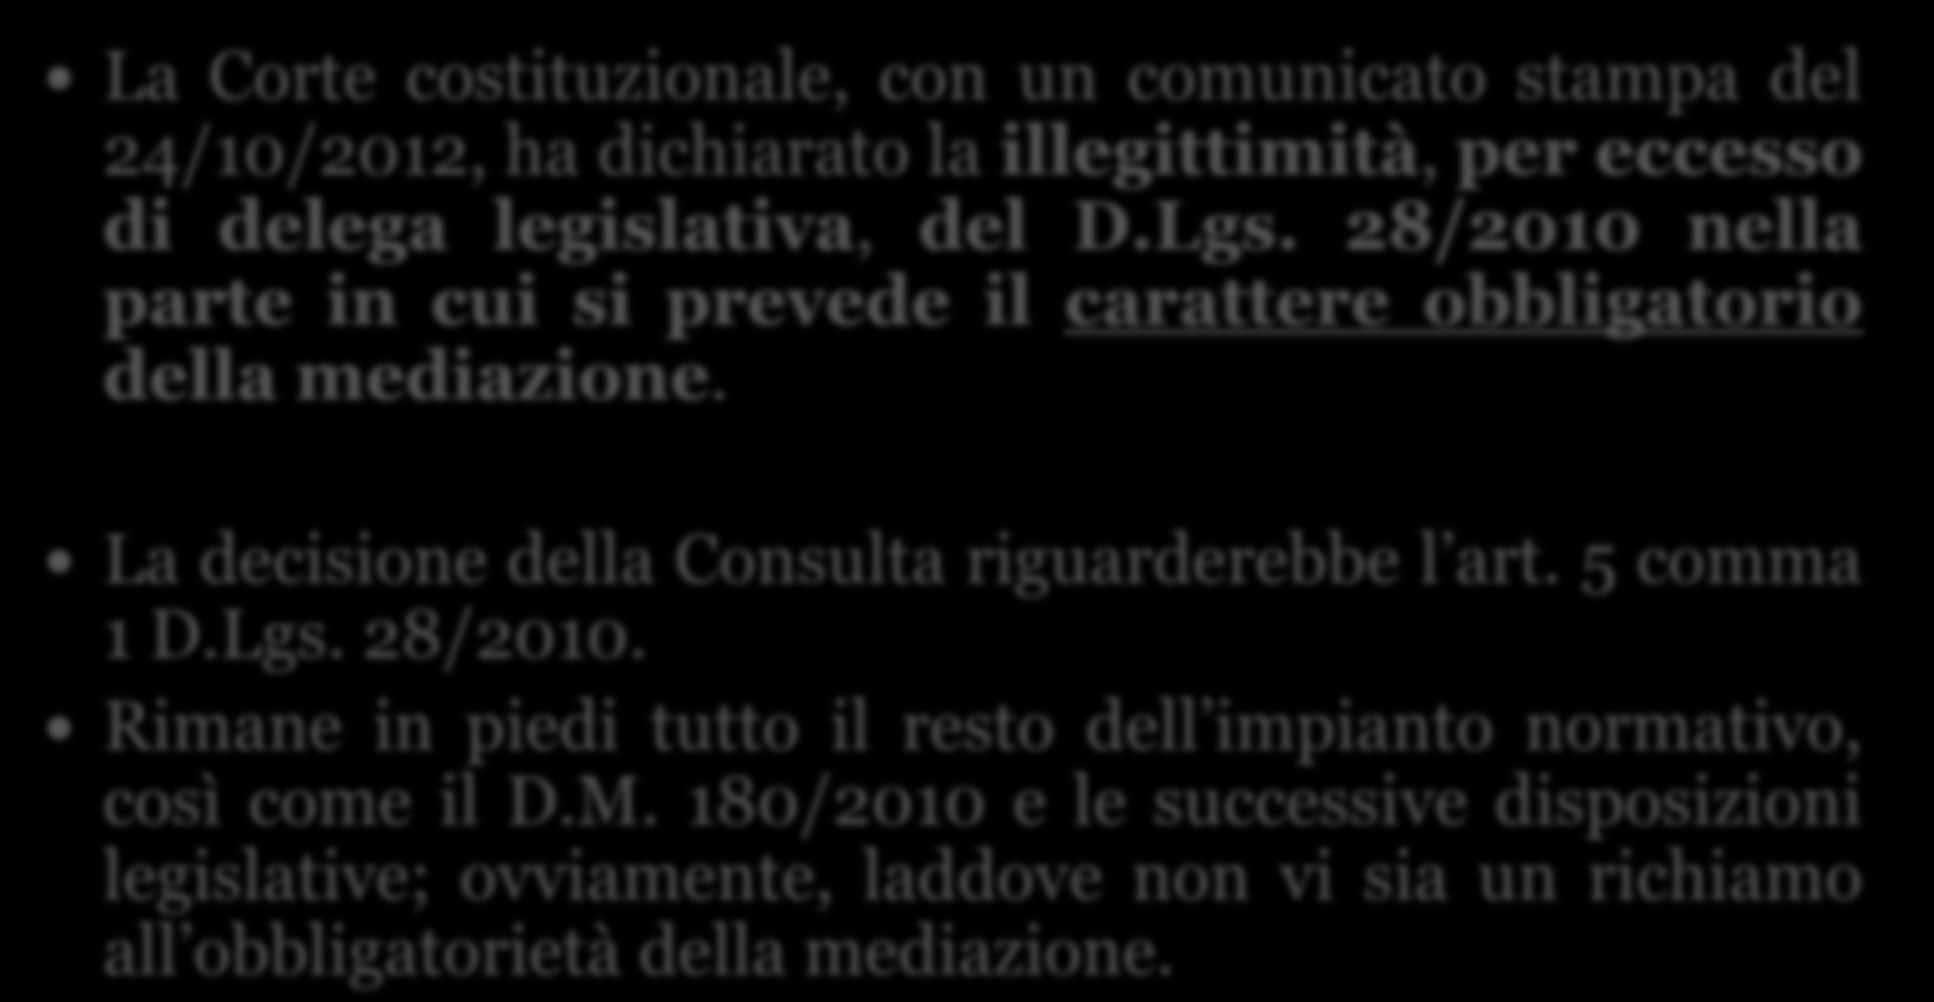 Incostituzionalità della mediazione obbligatoria 20 La Corte costituzionale, con un comunicato stampa del 24/10/2012, ha dichiarato la illegittimità, per eccesso di delega legislativa, del D.Lgs.